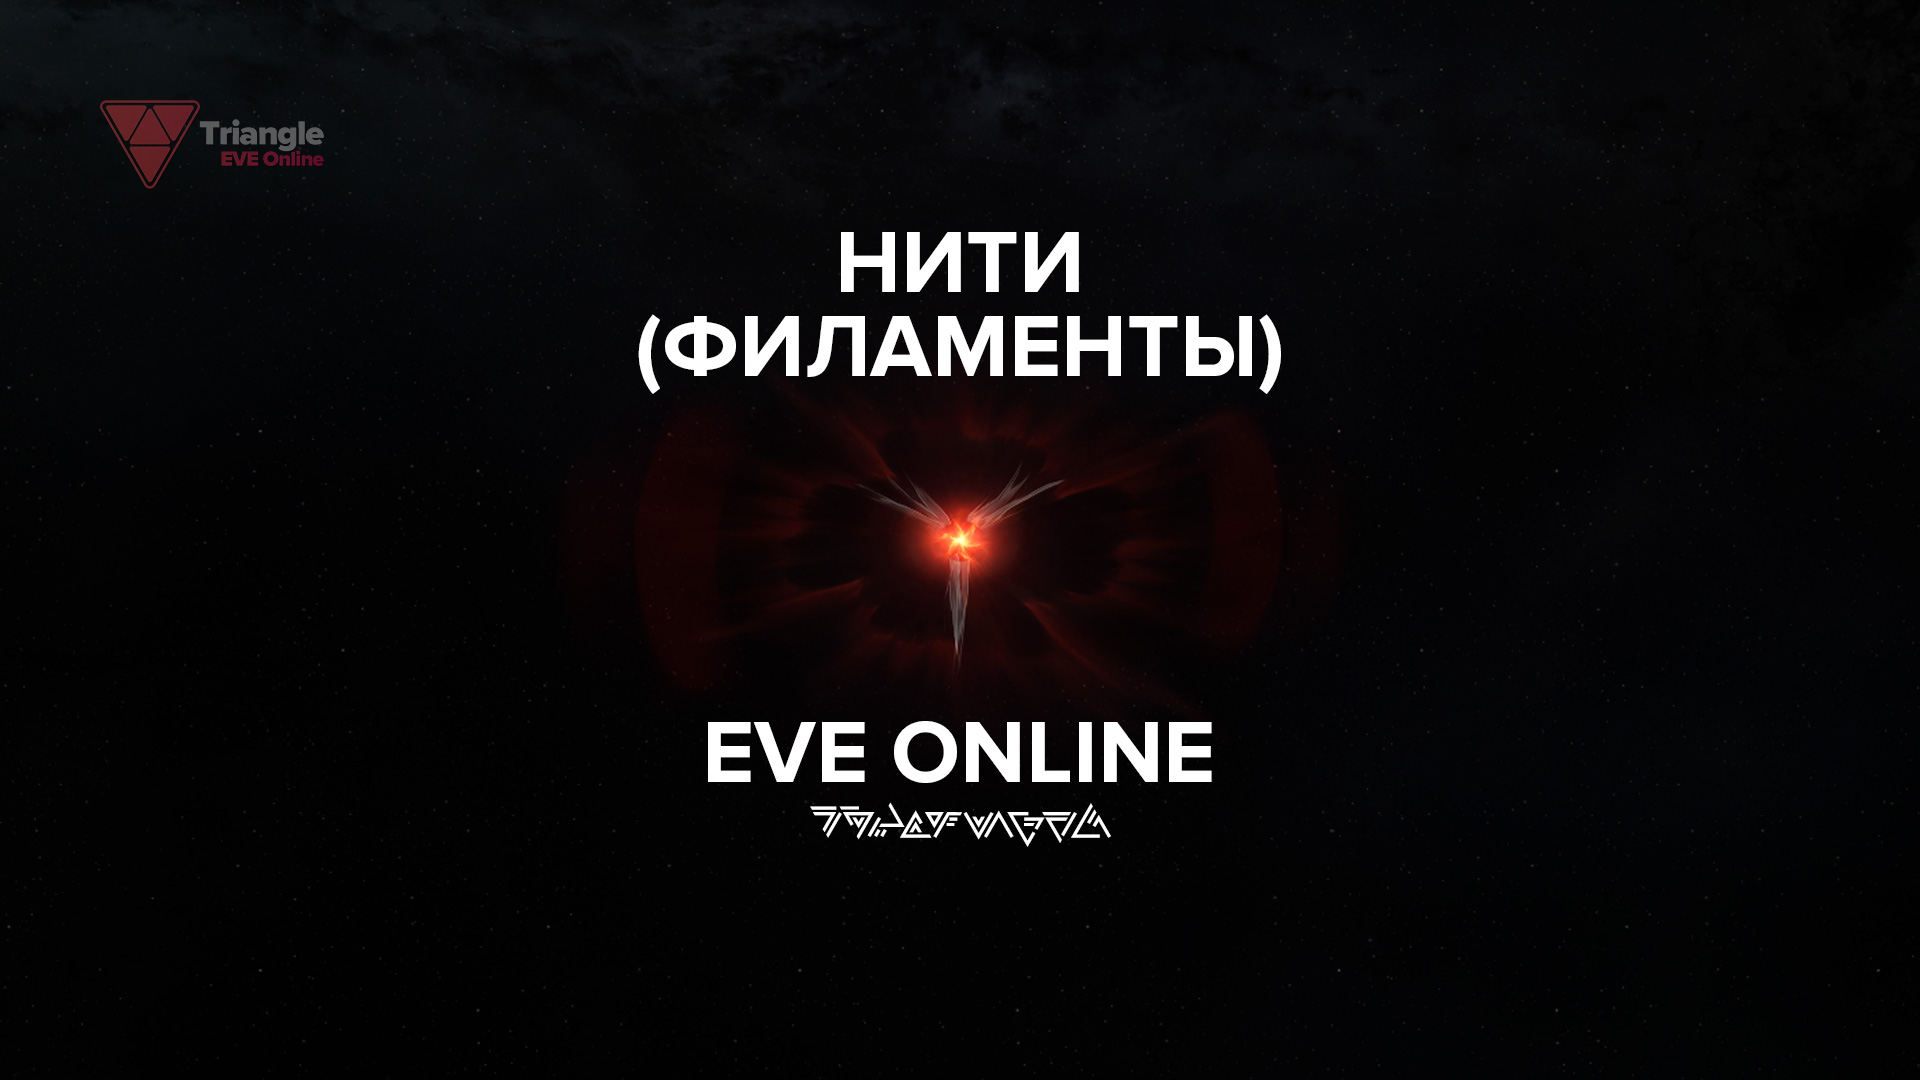 В EVE Online существуют Нити (филаменты) разных типов, которые могут переносить игроков в разные места